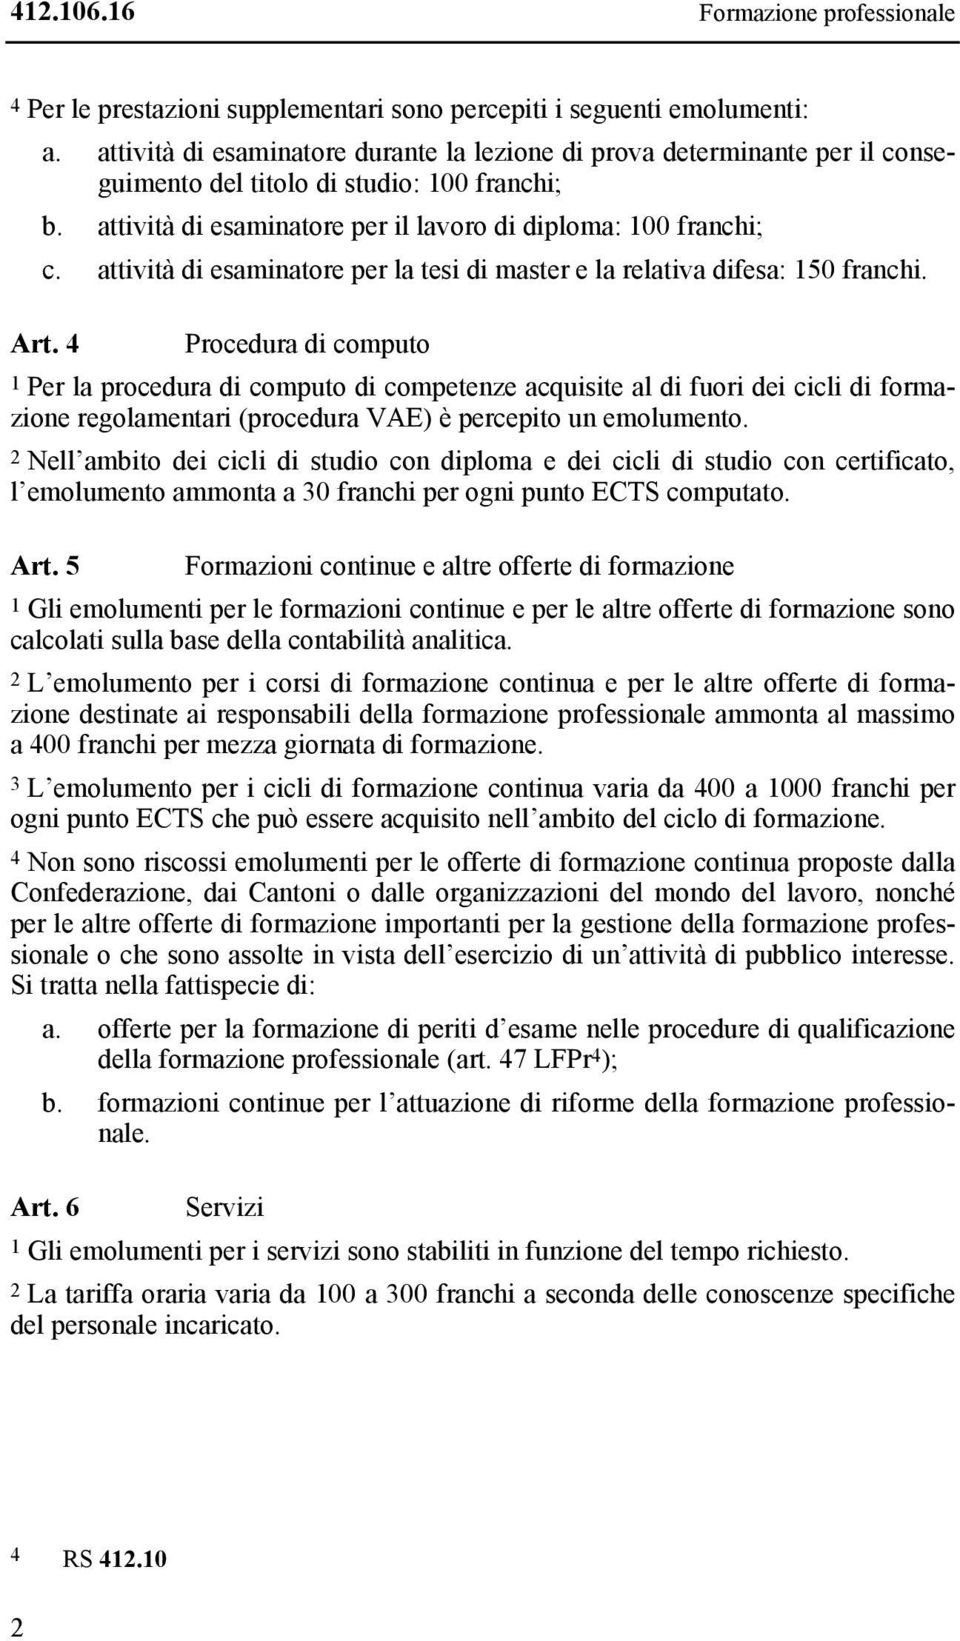 attività di esaminatore per la tesi di master e la relativa difesa: 150 franchi. Art.